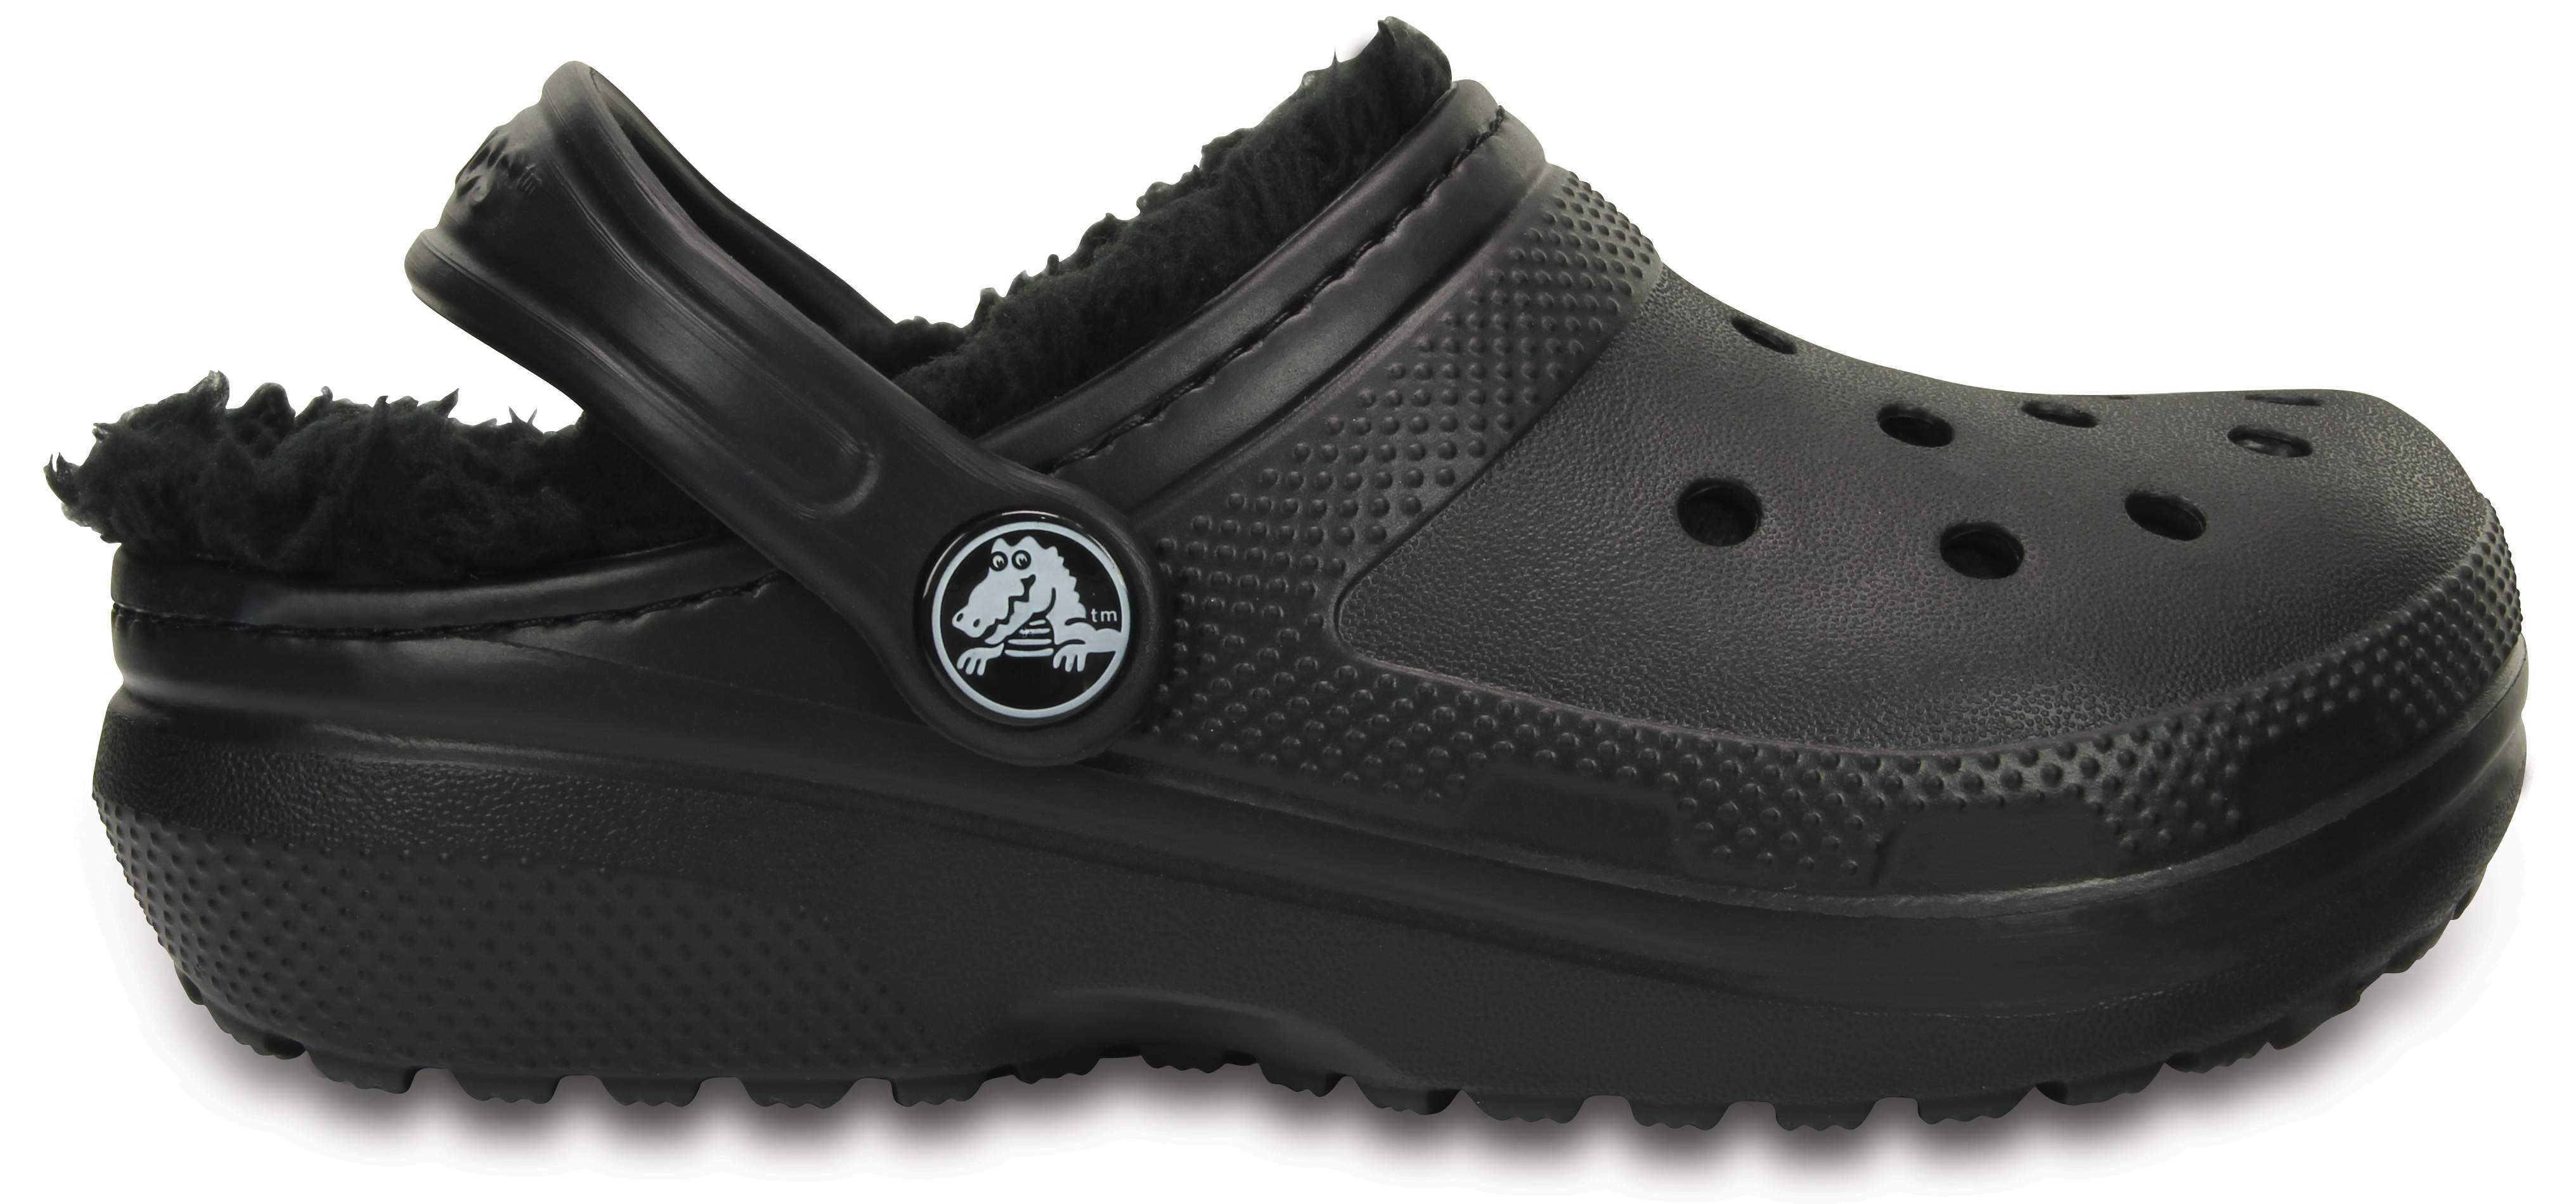 crocs classic lined clog black